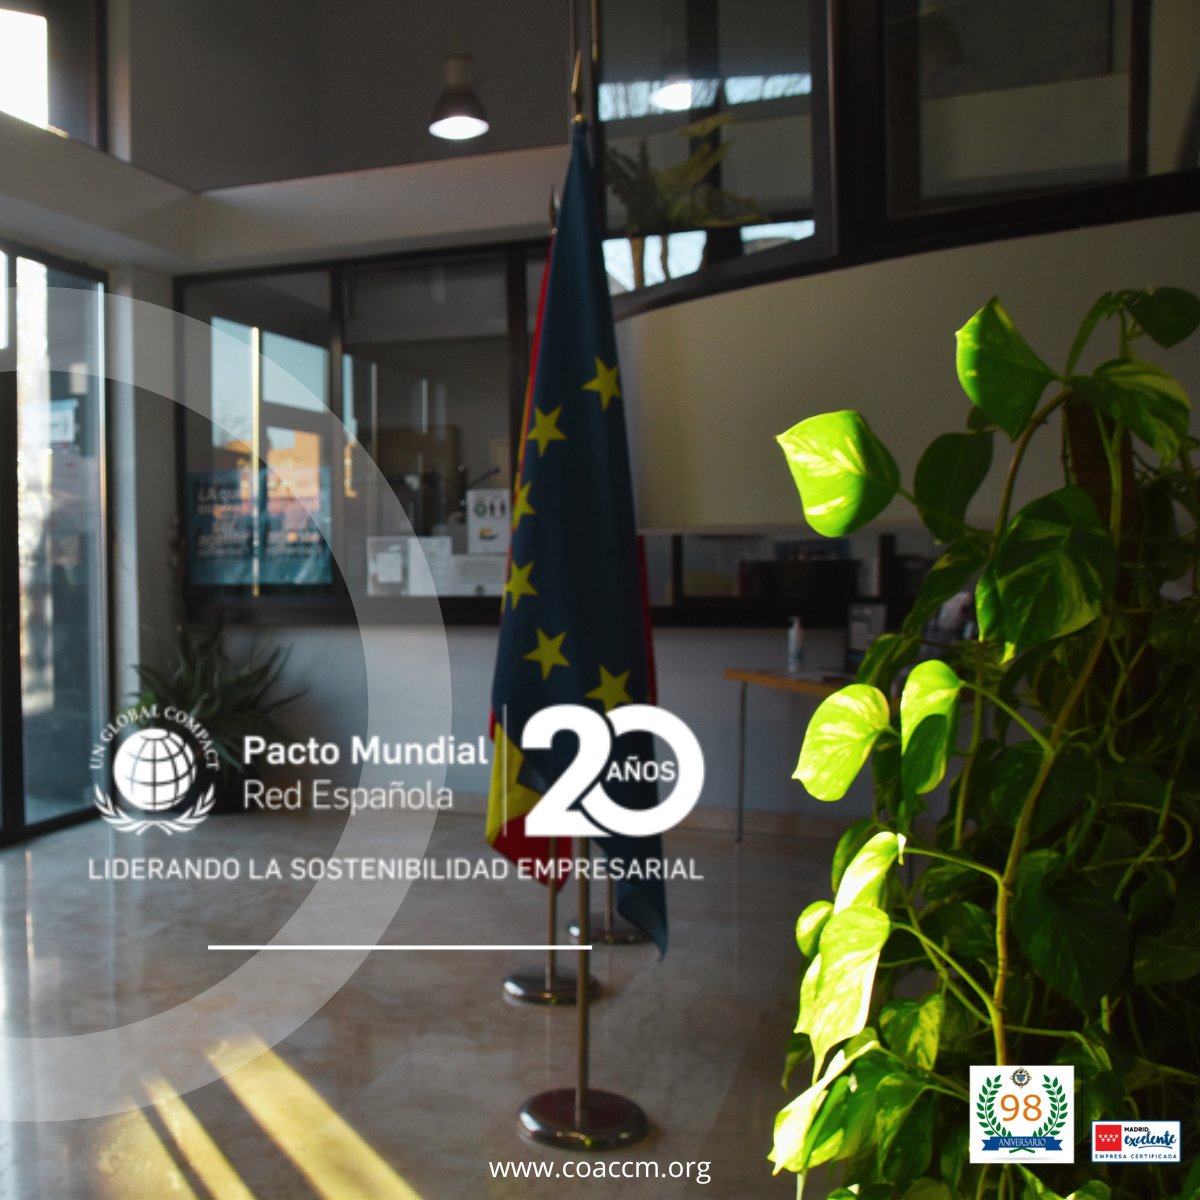 .@PactoMundial de @ONU_es celebra #20AñosdePacto liderando la #SostenibilidadEmpresarial
@COACCMadrid se suma a este aniversario reafirmando nuestro #CompromisoSostenible y trabajando para un futuro sostenible